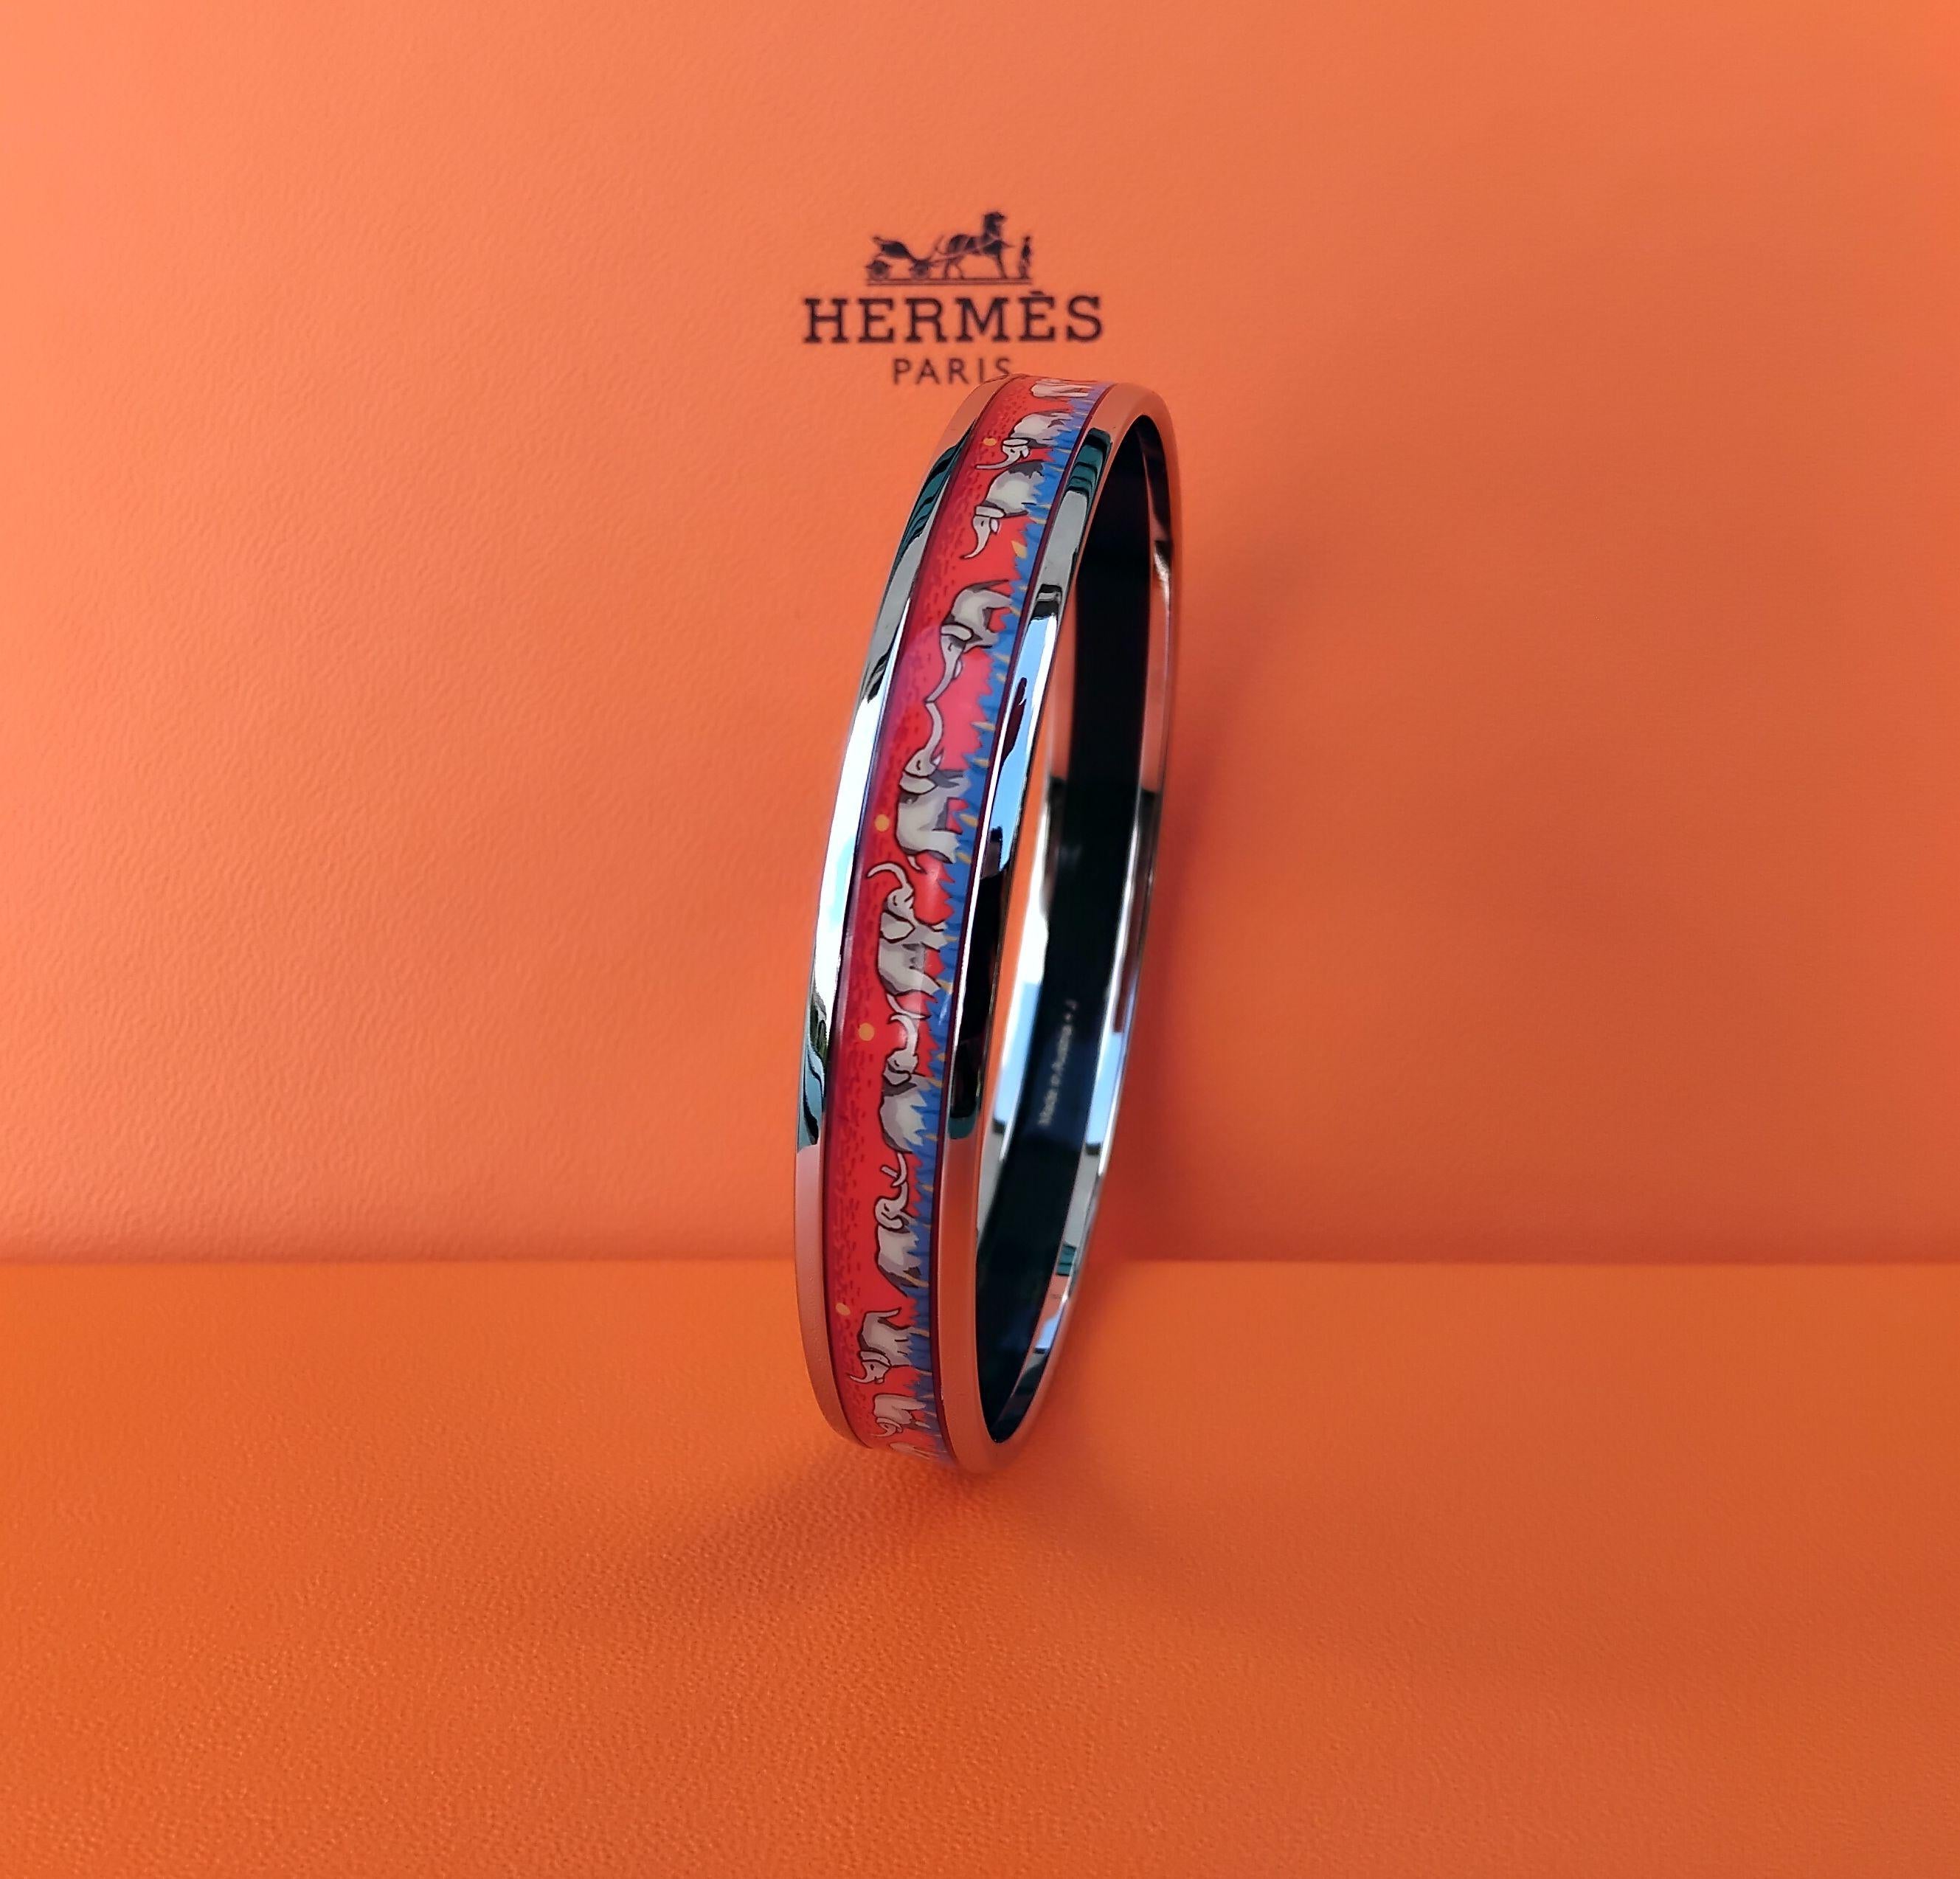 Hermès Enamel Bracelet Elephants Grazing Narrow Red New Phw Size GM 70 For Sale 4